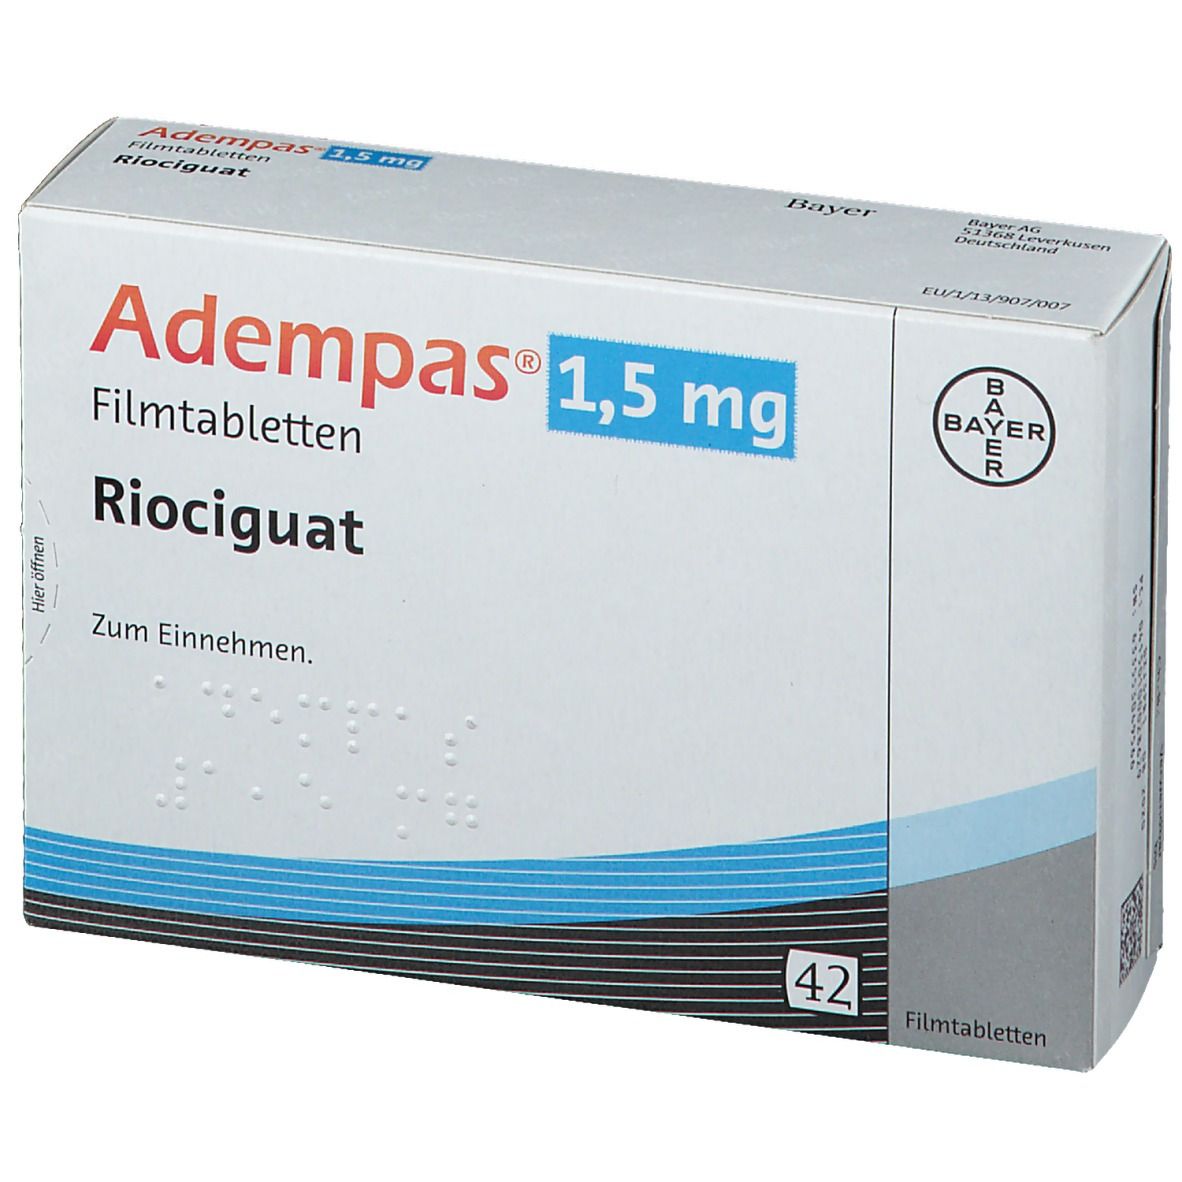 Adempas® 1,5 mg